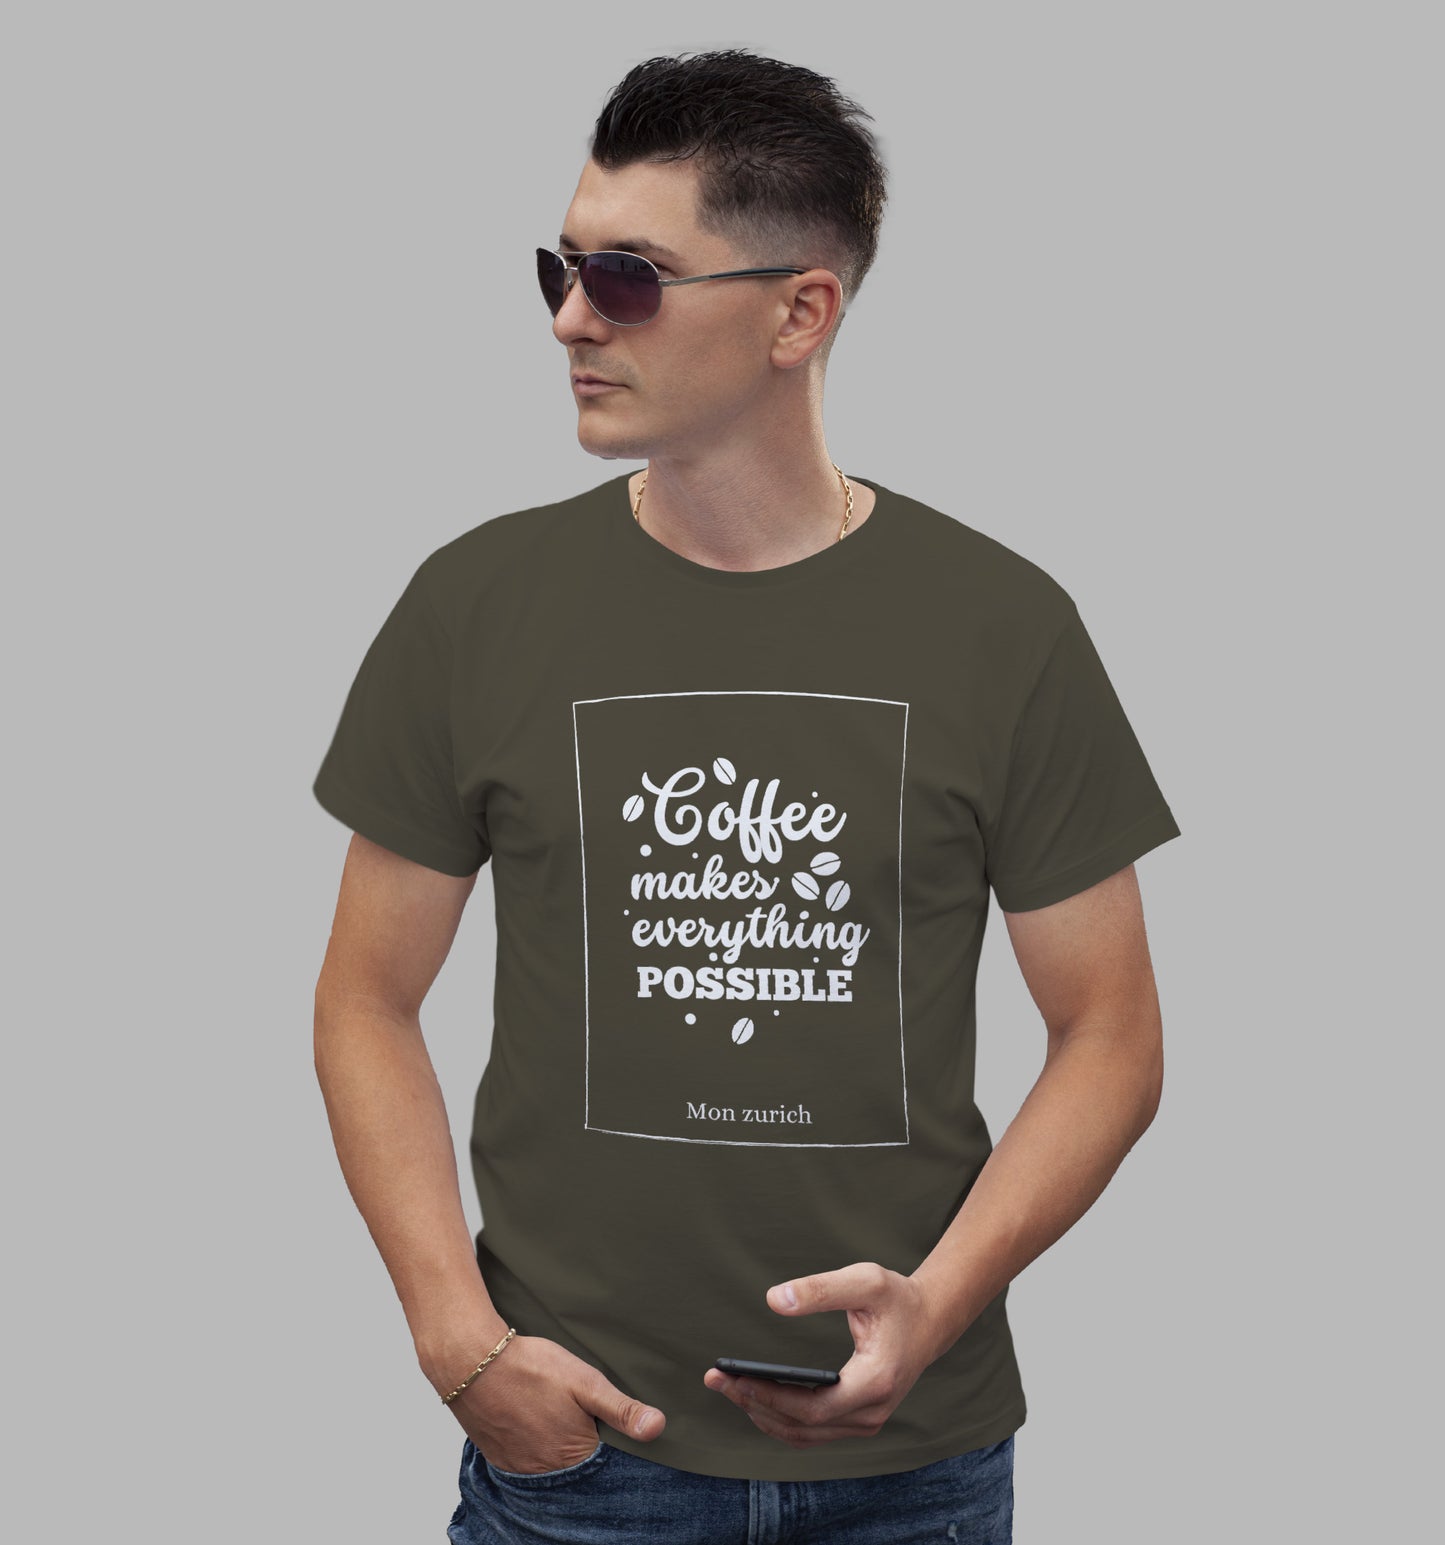 Coffee Makes Every Thing Better T-Shirt In Dark - Mon Zurich Originals